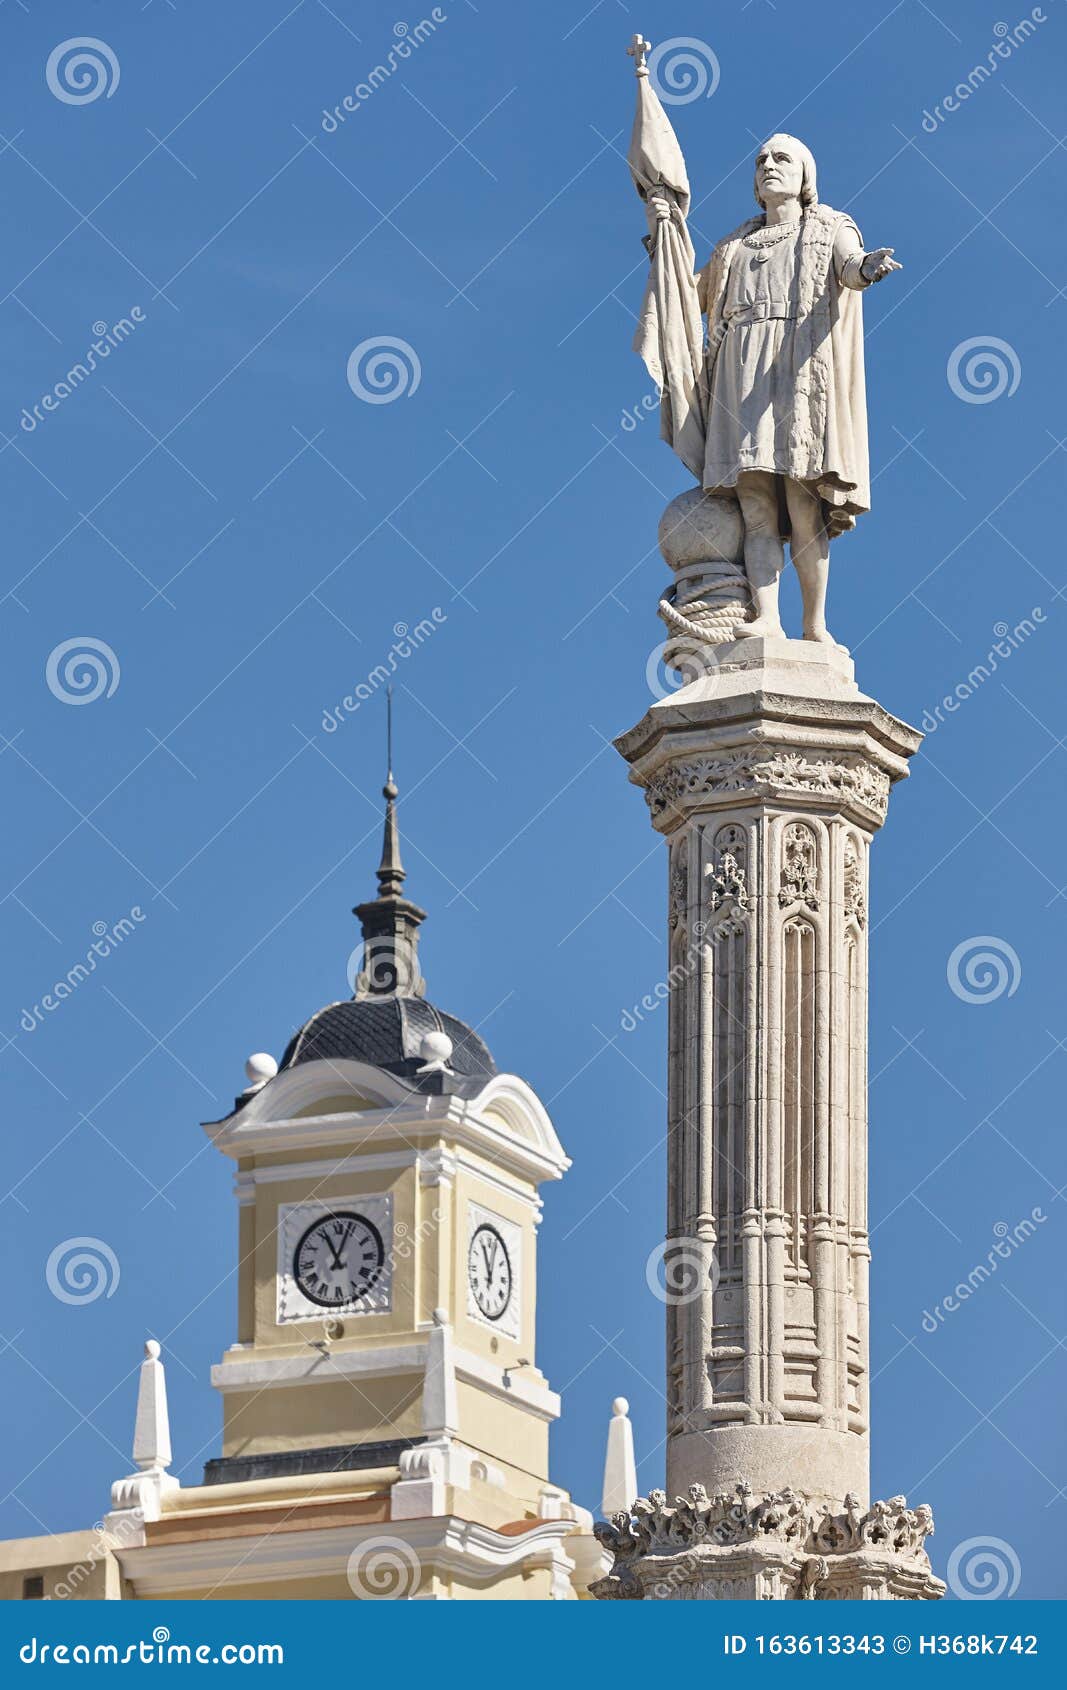 columbus statue monument in madrid city center. spanish heritage